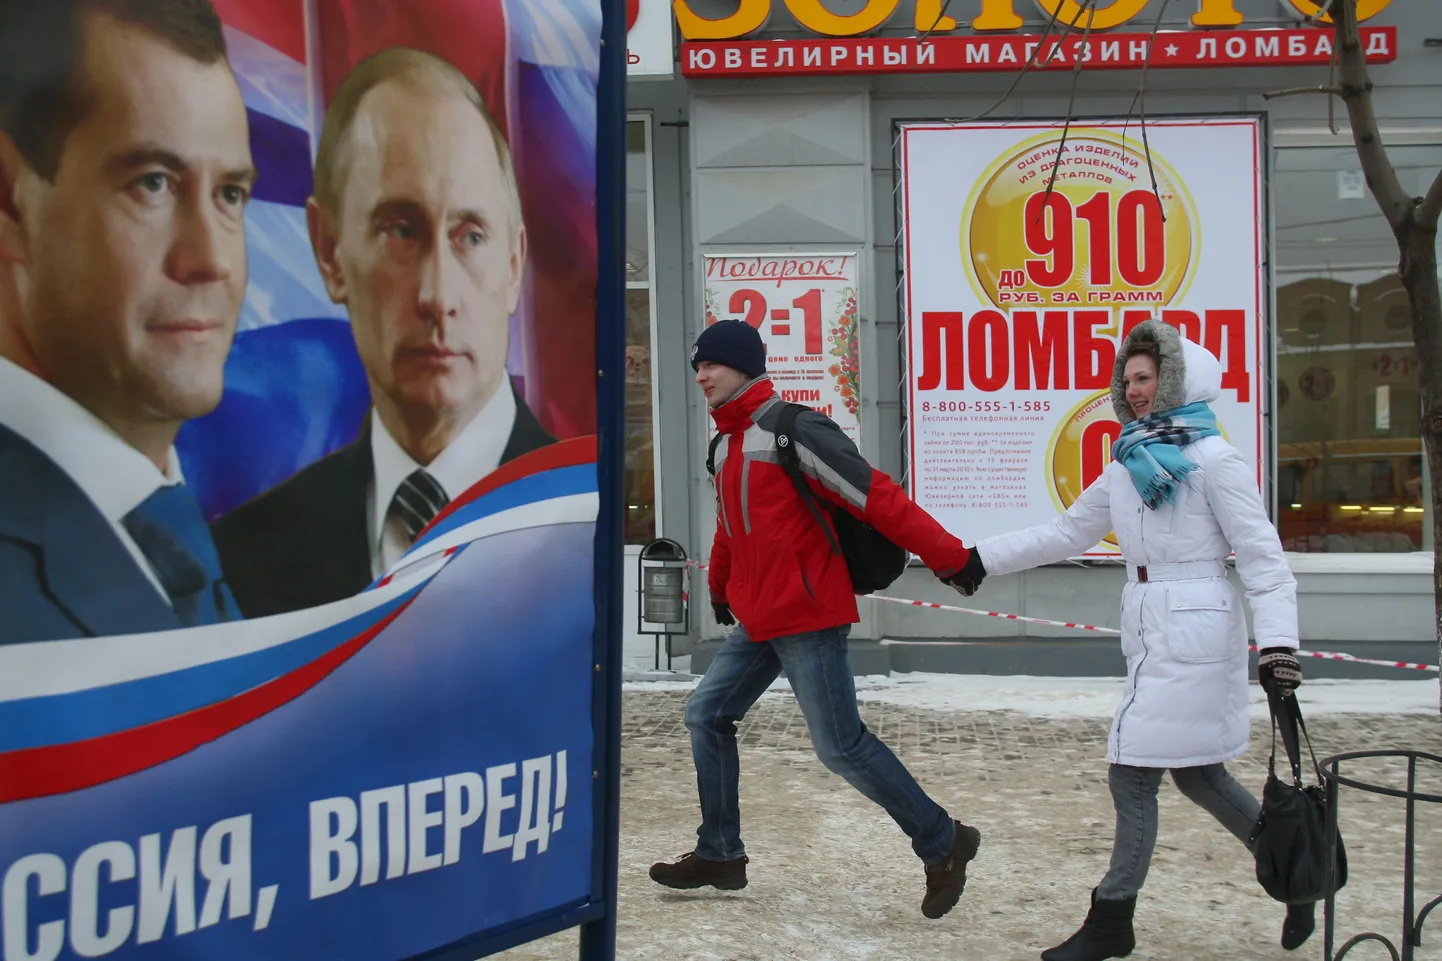 Mees ja naine jalutavad Ivanovo linnas mööda Ühtse Venemaa valimisplakatist, millel president Medvedev ja peaminister Putin ärgitavad Venemaad edasi liikuma.